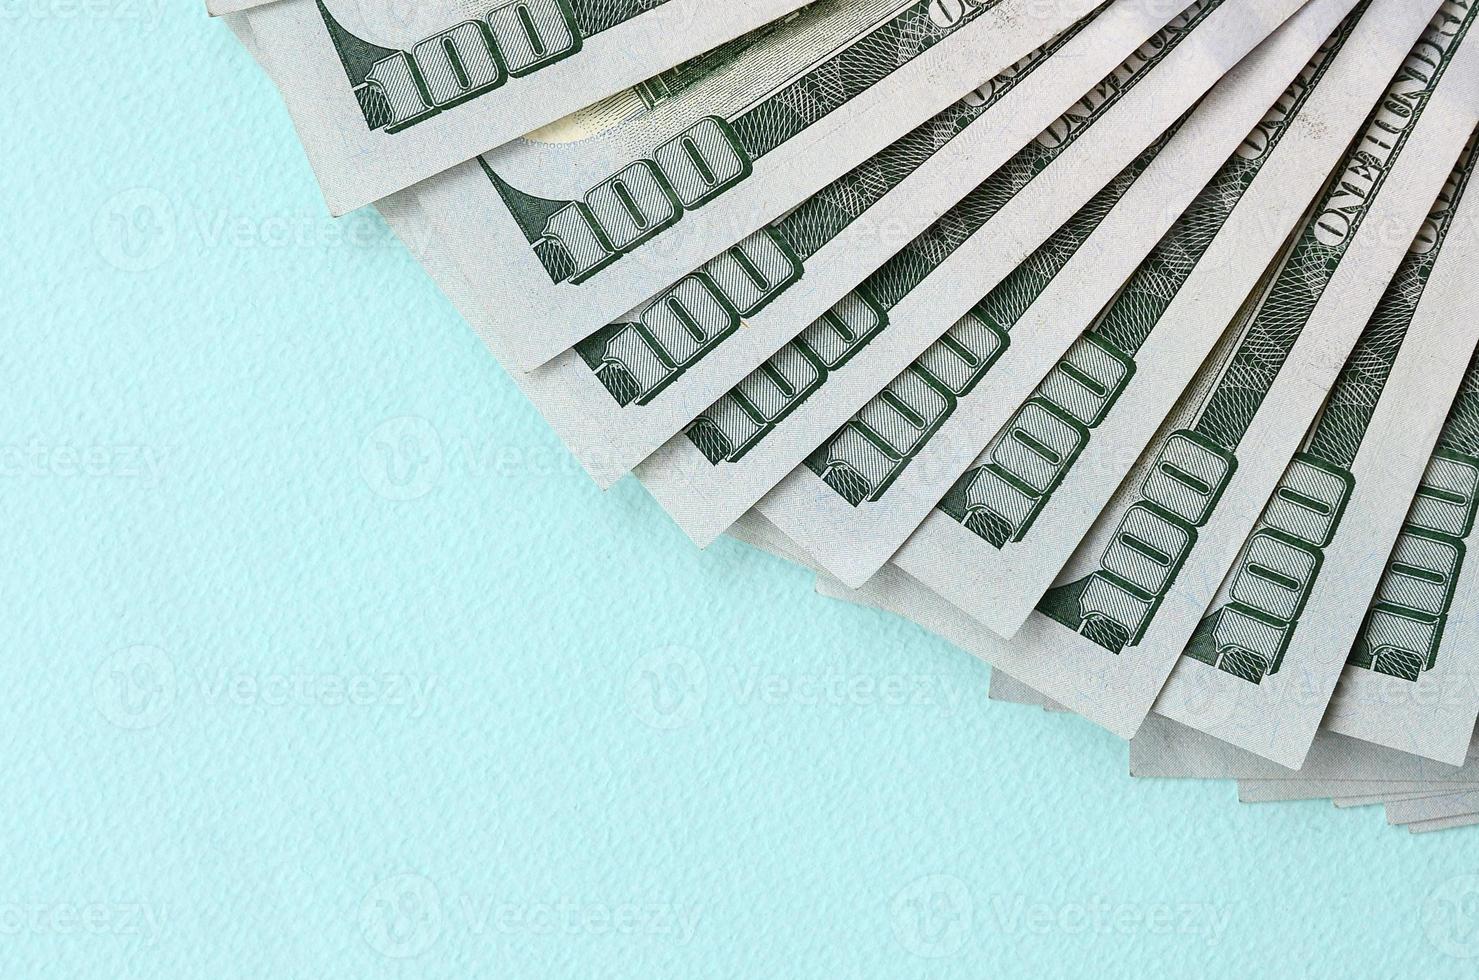 fã de notas de um dólar americano de um novo design encontra-se em um fundo azul claro foto